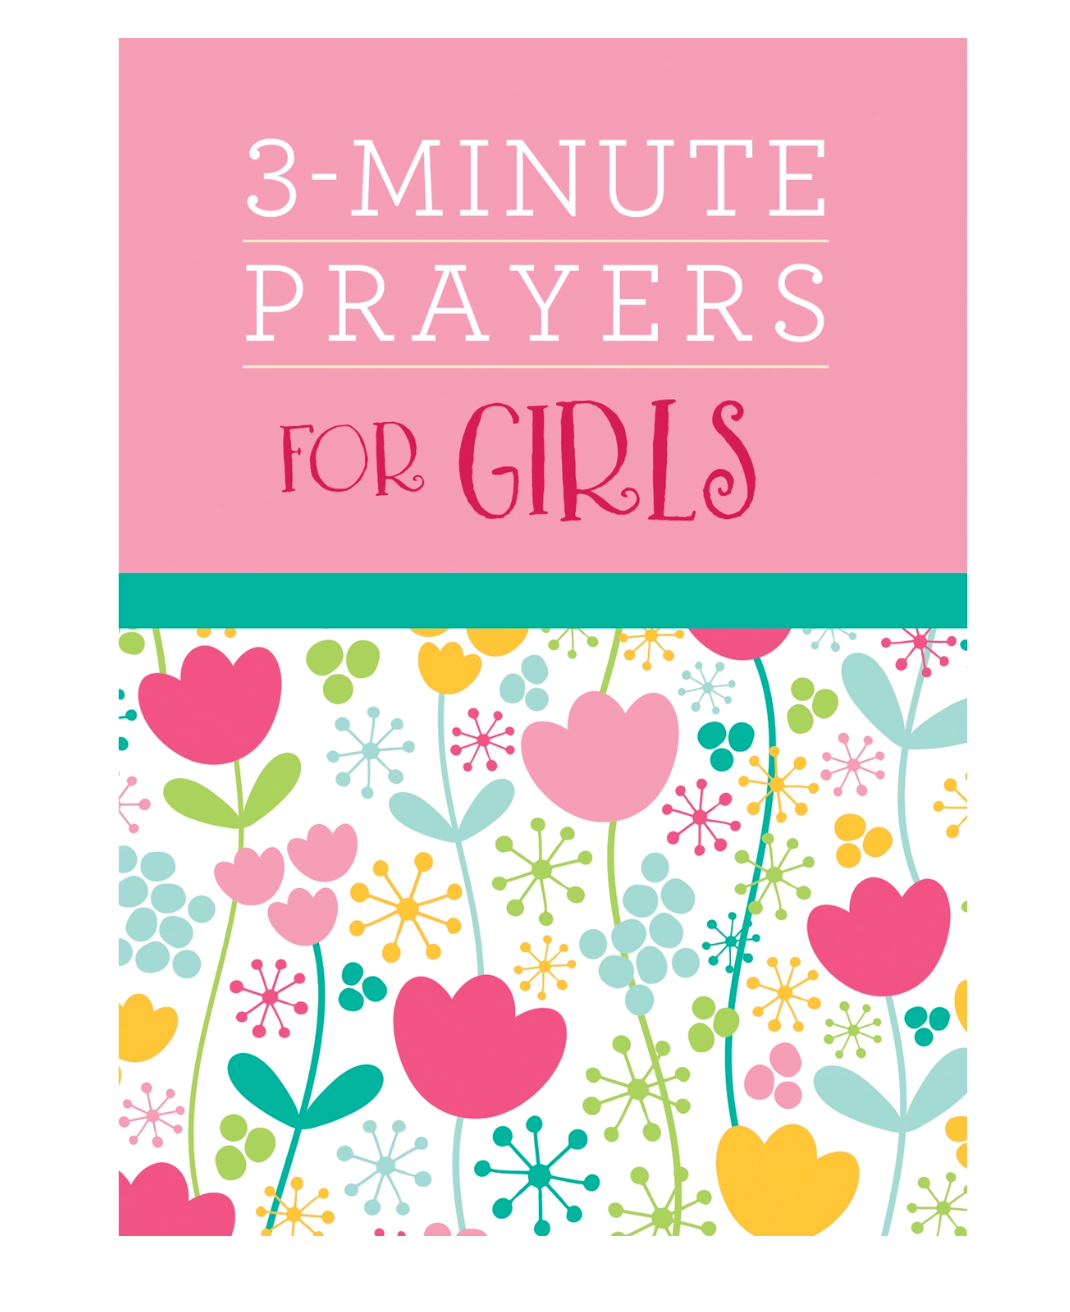 3 MINUTE PRAYERS FOR GIRLS